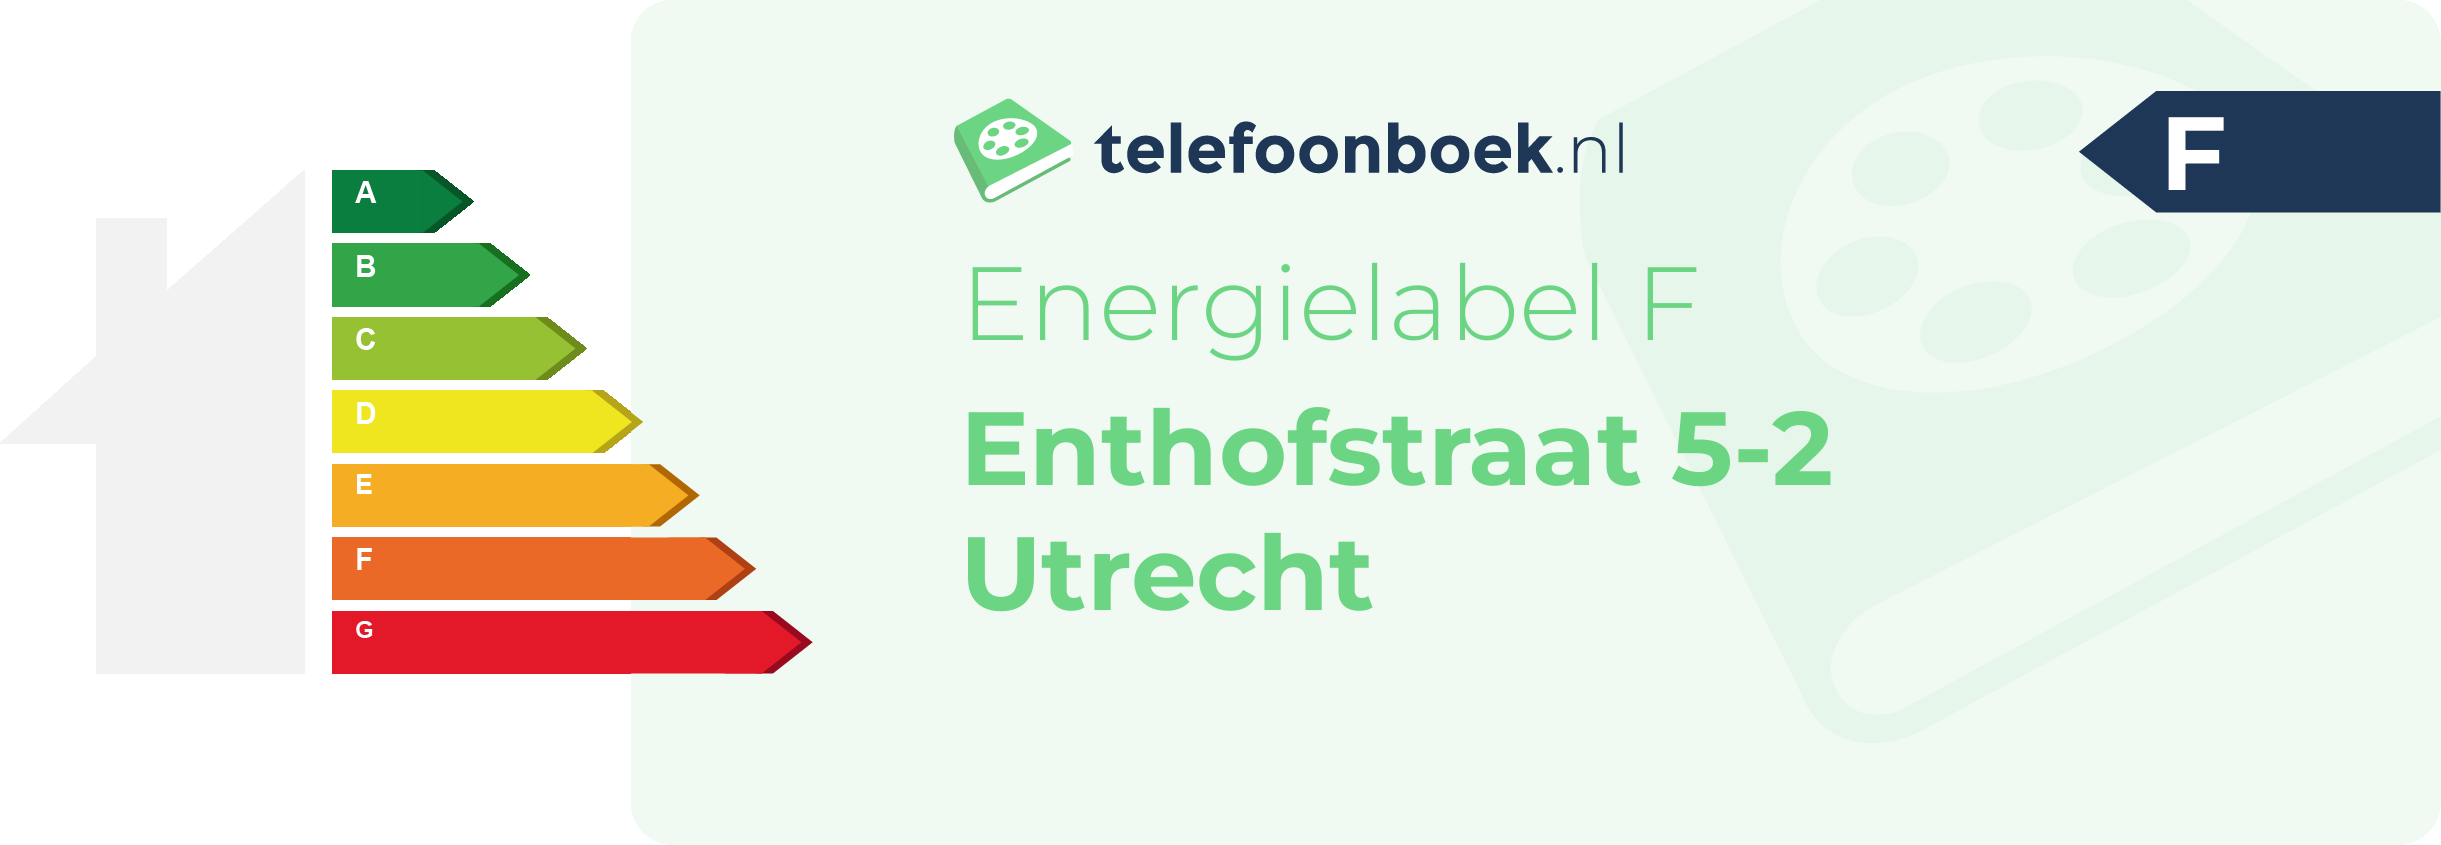 Energielabel Enthofstraat 5-2 Utrecht